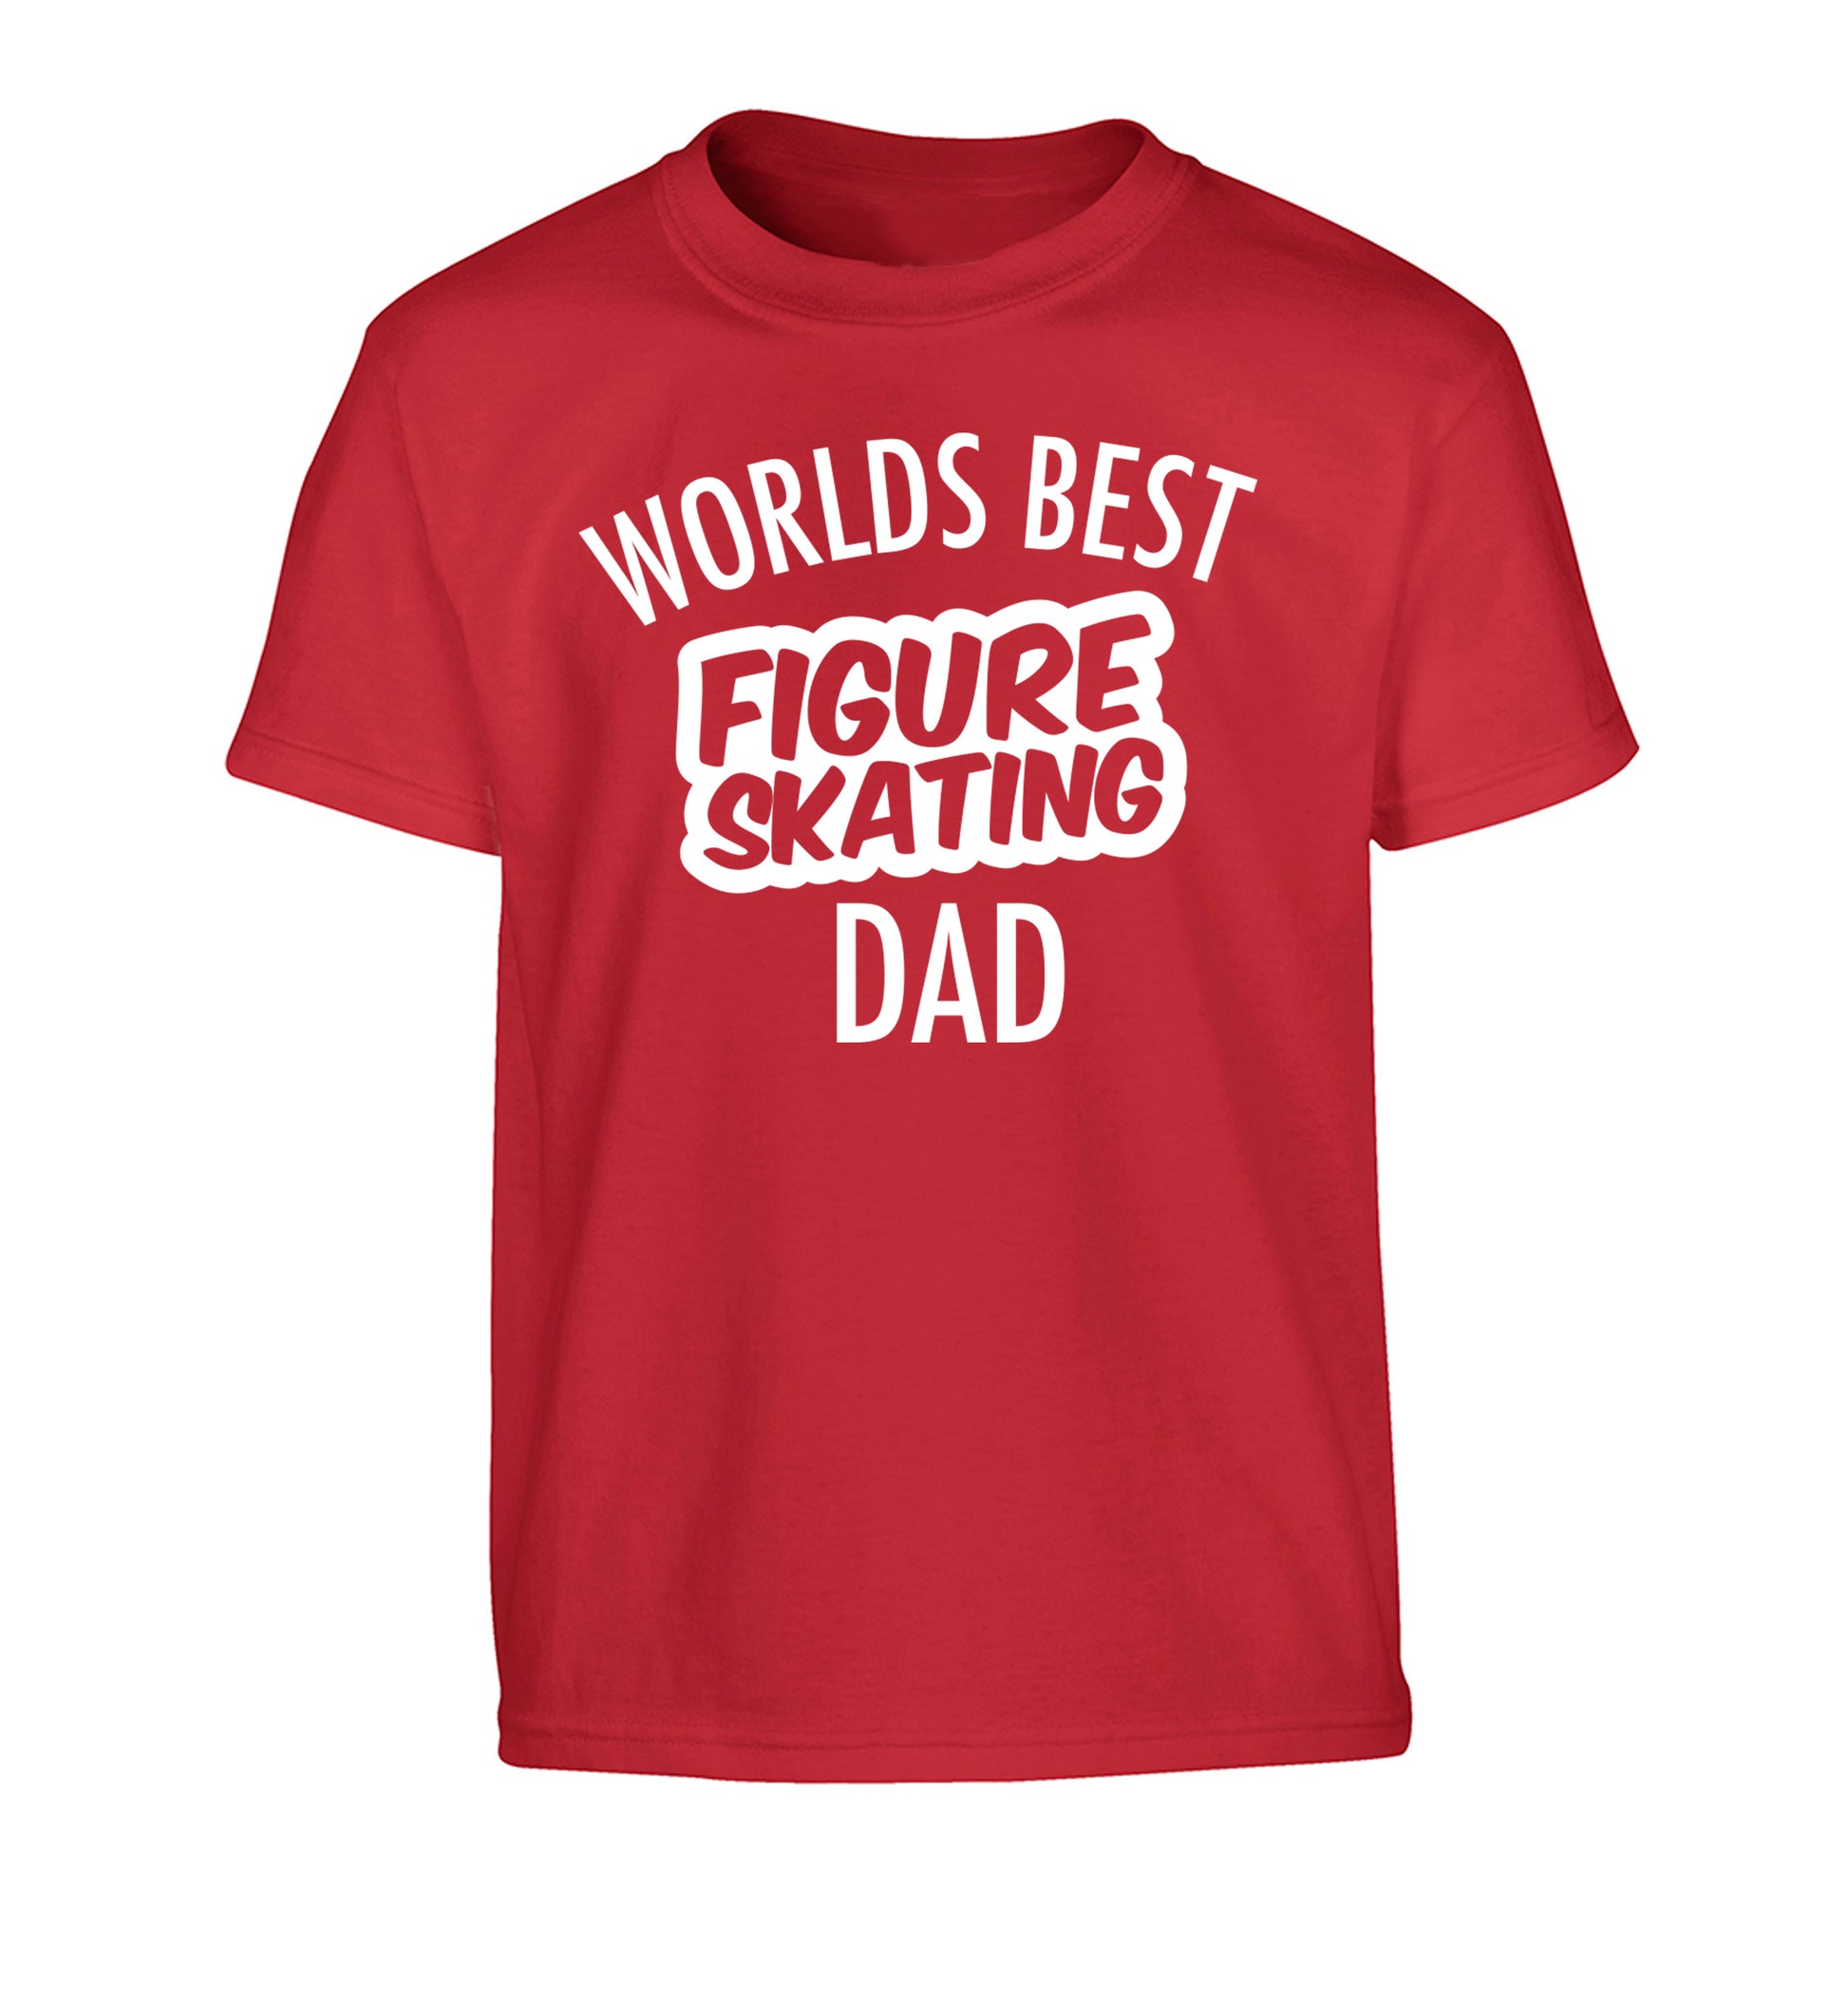 Worlds best figure skating dad Children's red Tshirt 12-14 Years